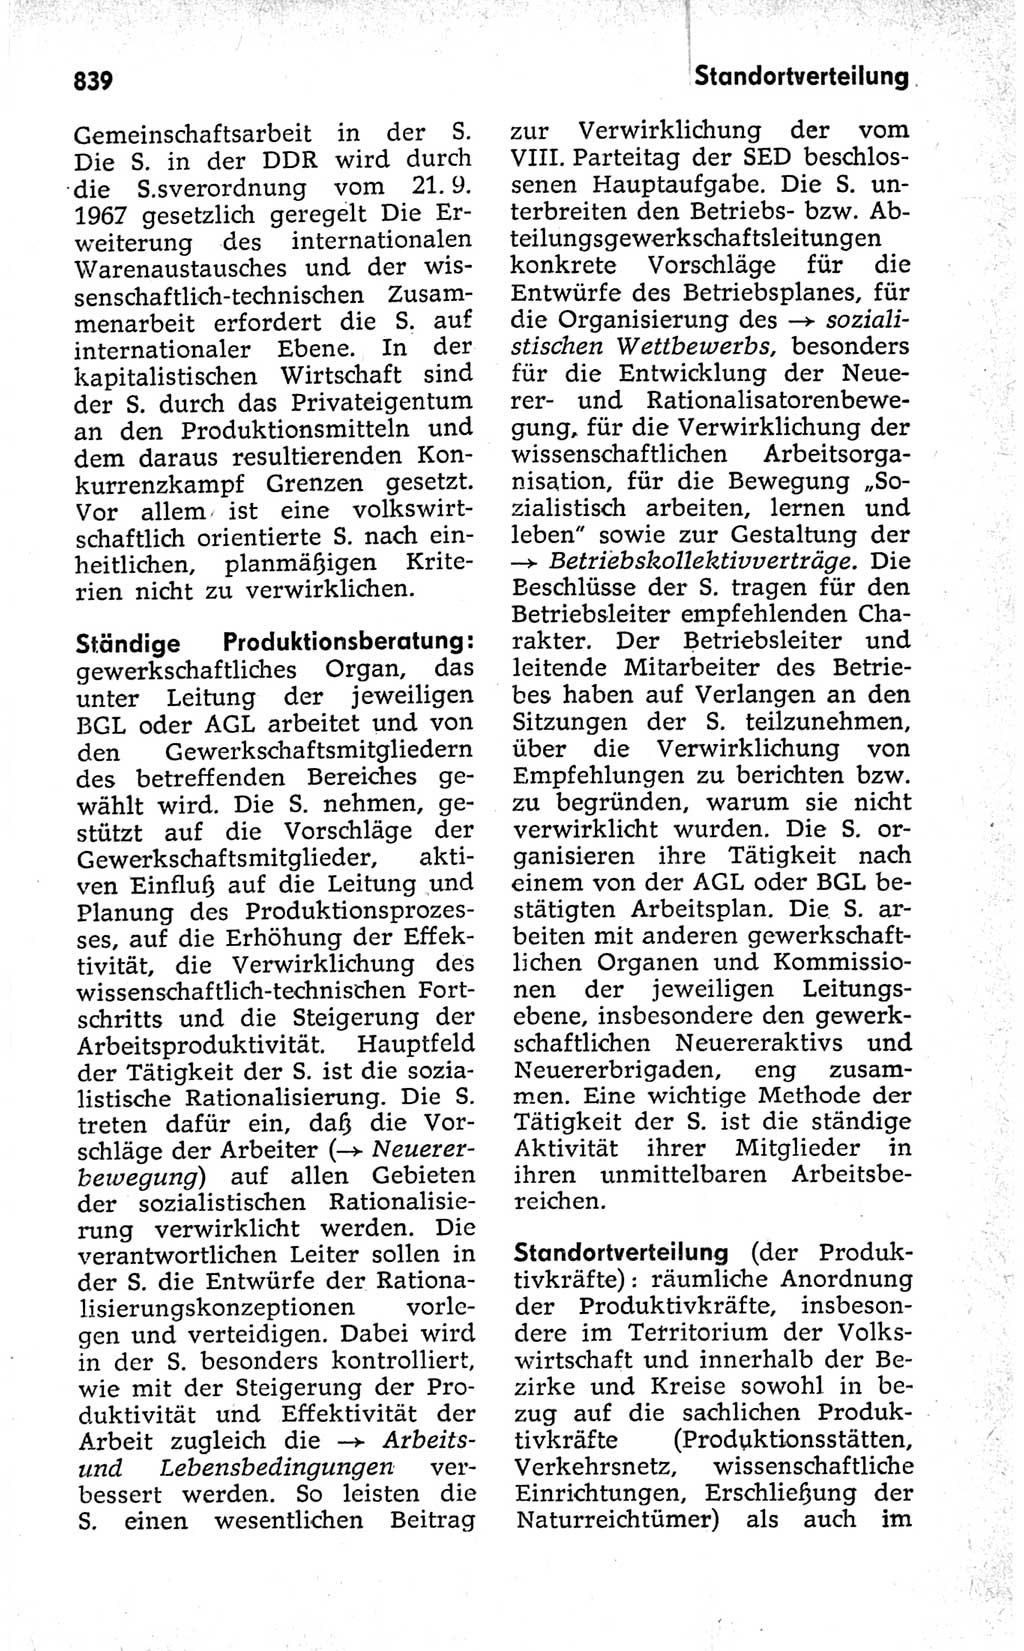 Kleines politisches Wörterbuch [Deutsche Demokratische Republik (DDR)] 1973, Seite 839 (Kl. pol. Wb. DDR 1973, S. 839)